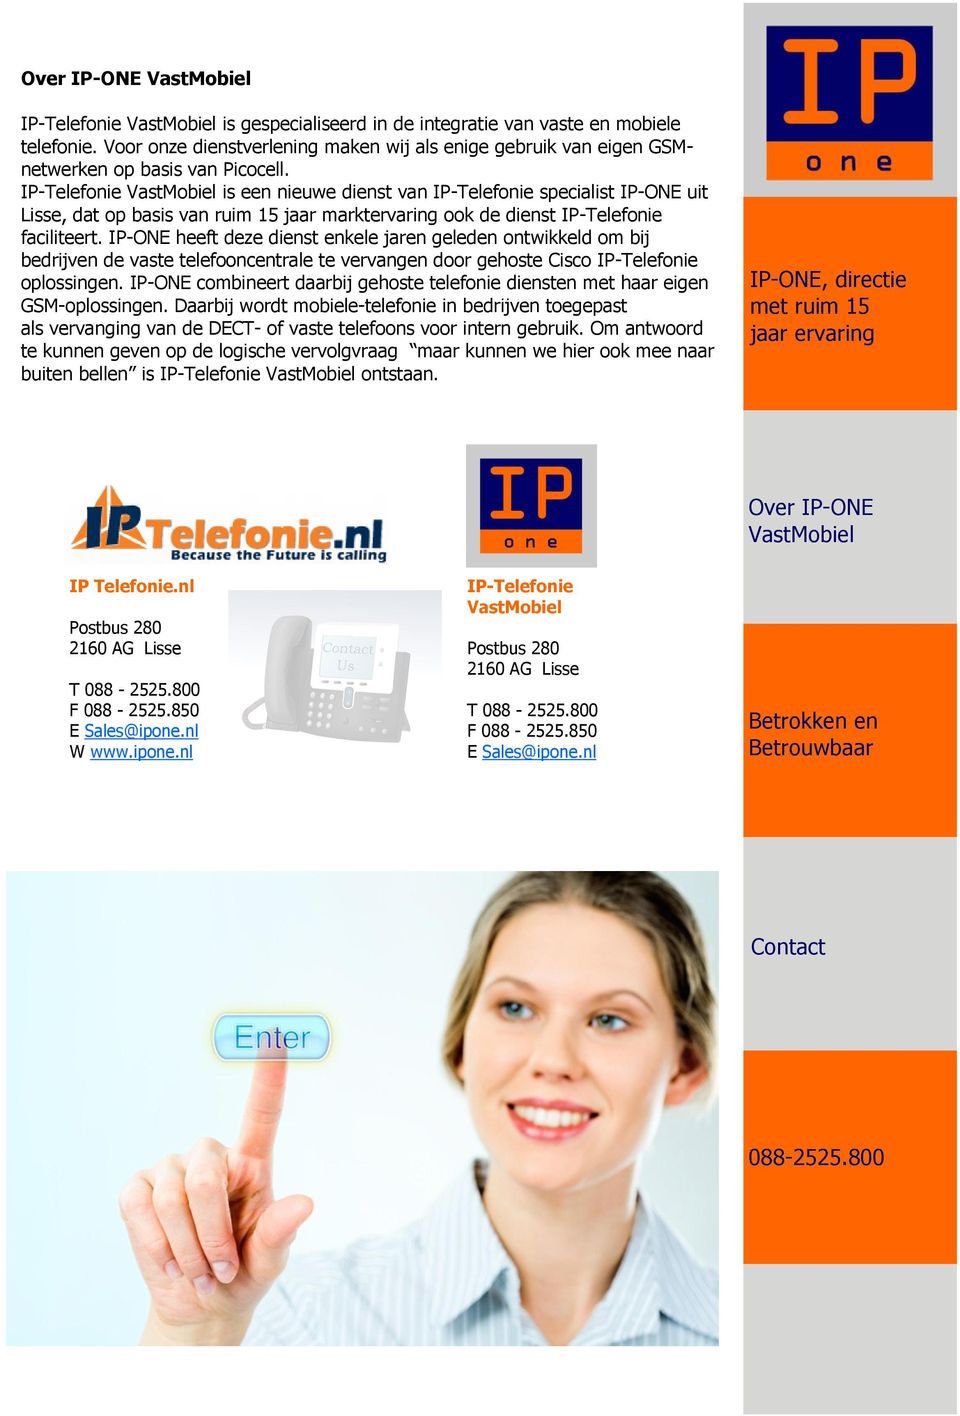 IP-Telefonie VastMobiel is een nieuwe dienst van IP-Telefonie specialist IP-ONE uit Lisse, dat op basis van ruim 15 jaar marktervaring ook de dienst IP-Telefonie faciliteert.